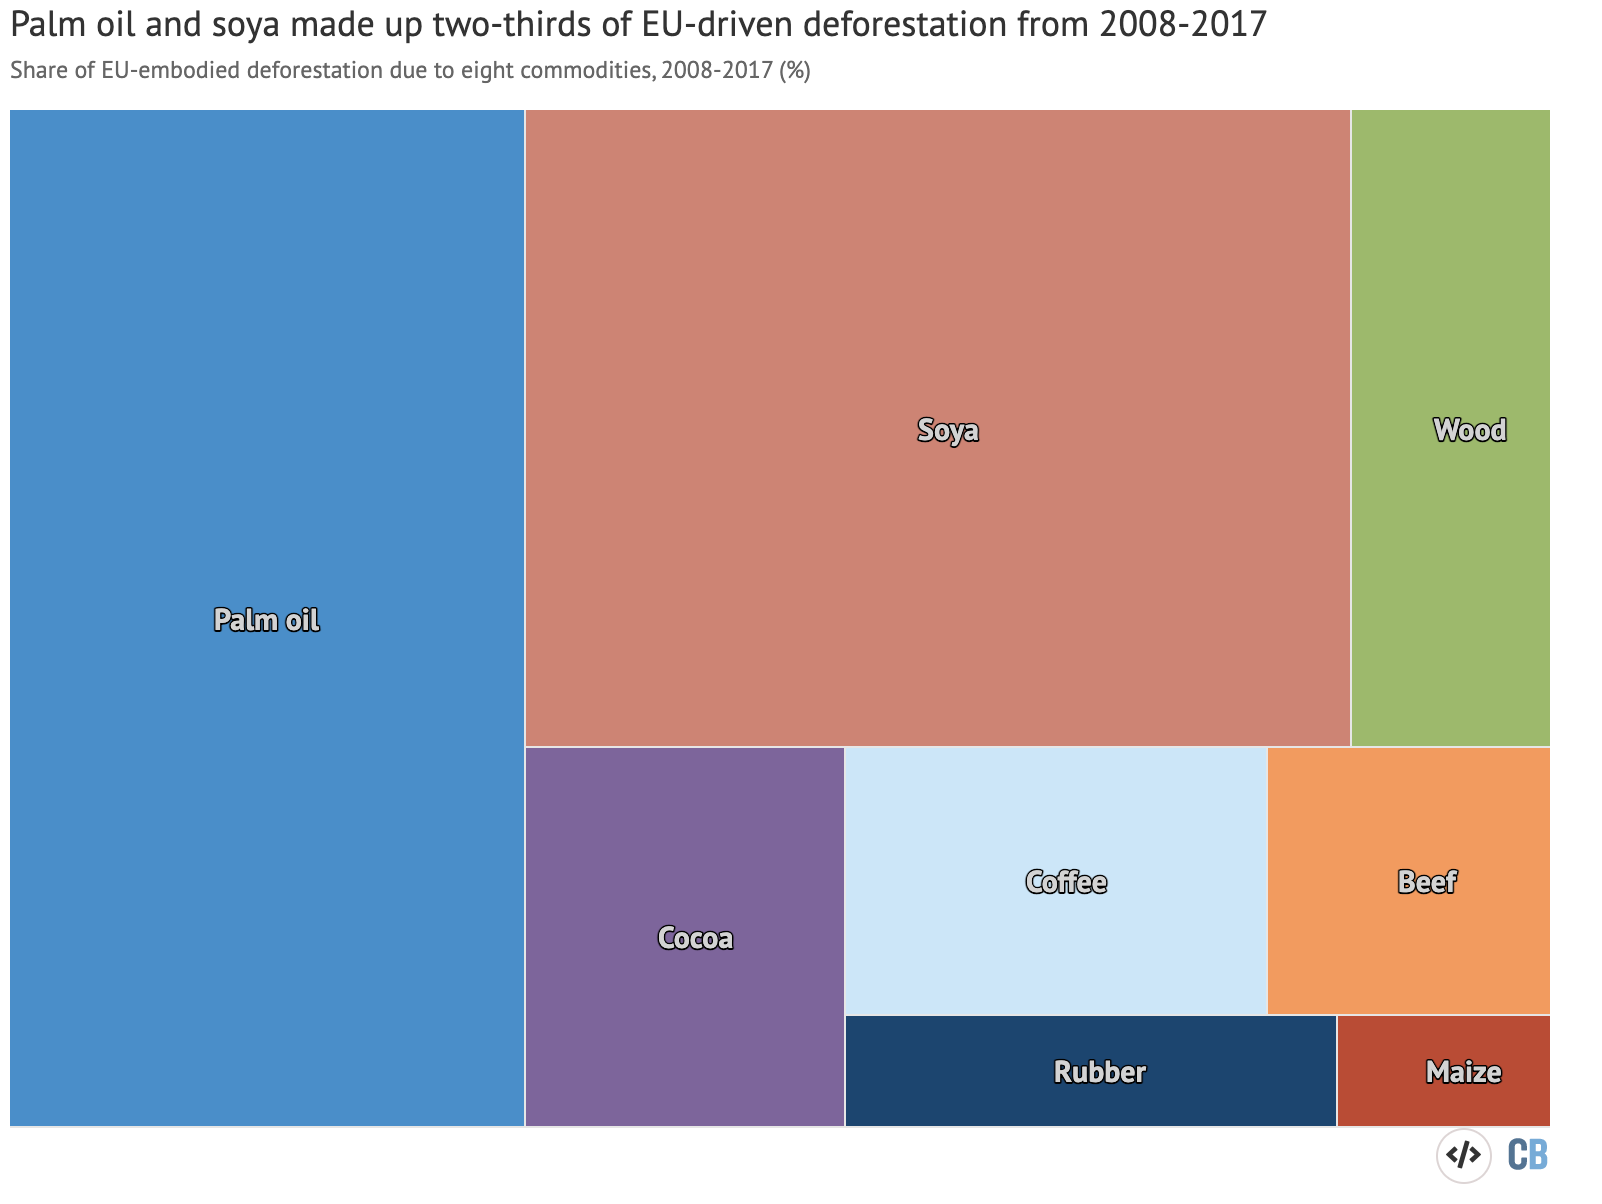 Bijdragen van acht belangrijke grondstoffen aan door de EU veroorzaakte ontbossing tussen 2008 en 2017. Procentuele aandelen worden weergegeven voor palmolie (blauw), soja (rood), hout (groen), cacao (paars), koffie (lichtblauw), rundvlees (oranje ), rubber (donkerblauw) en maïs (donkerrood). Bron: Europese Commissie (2021)